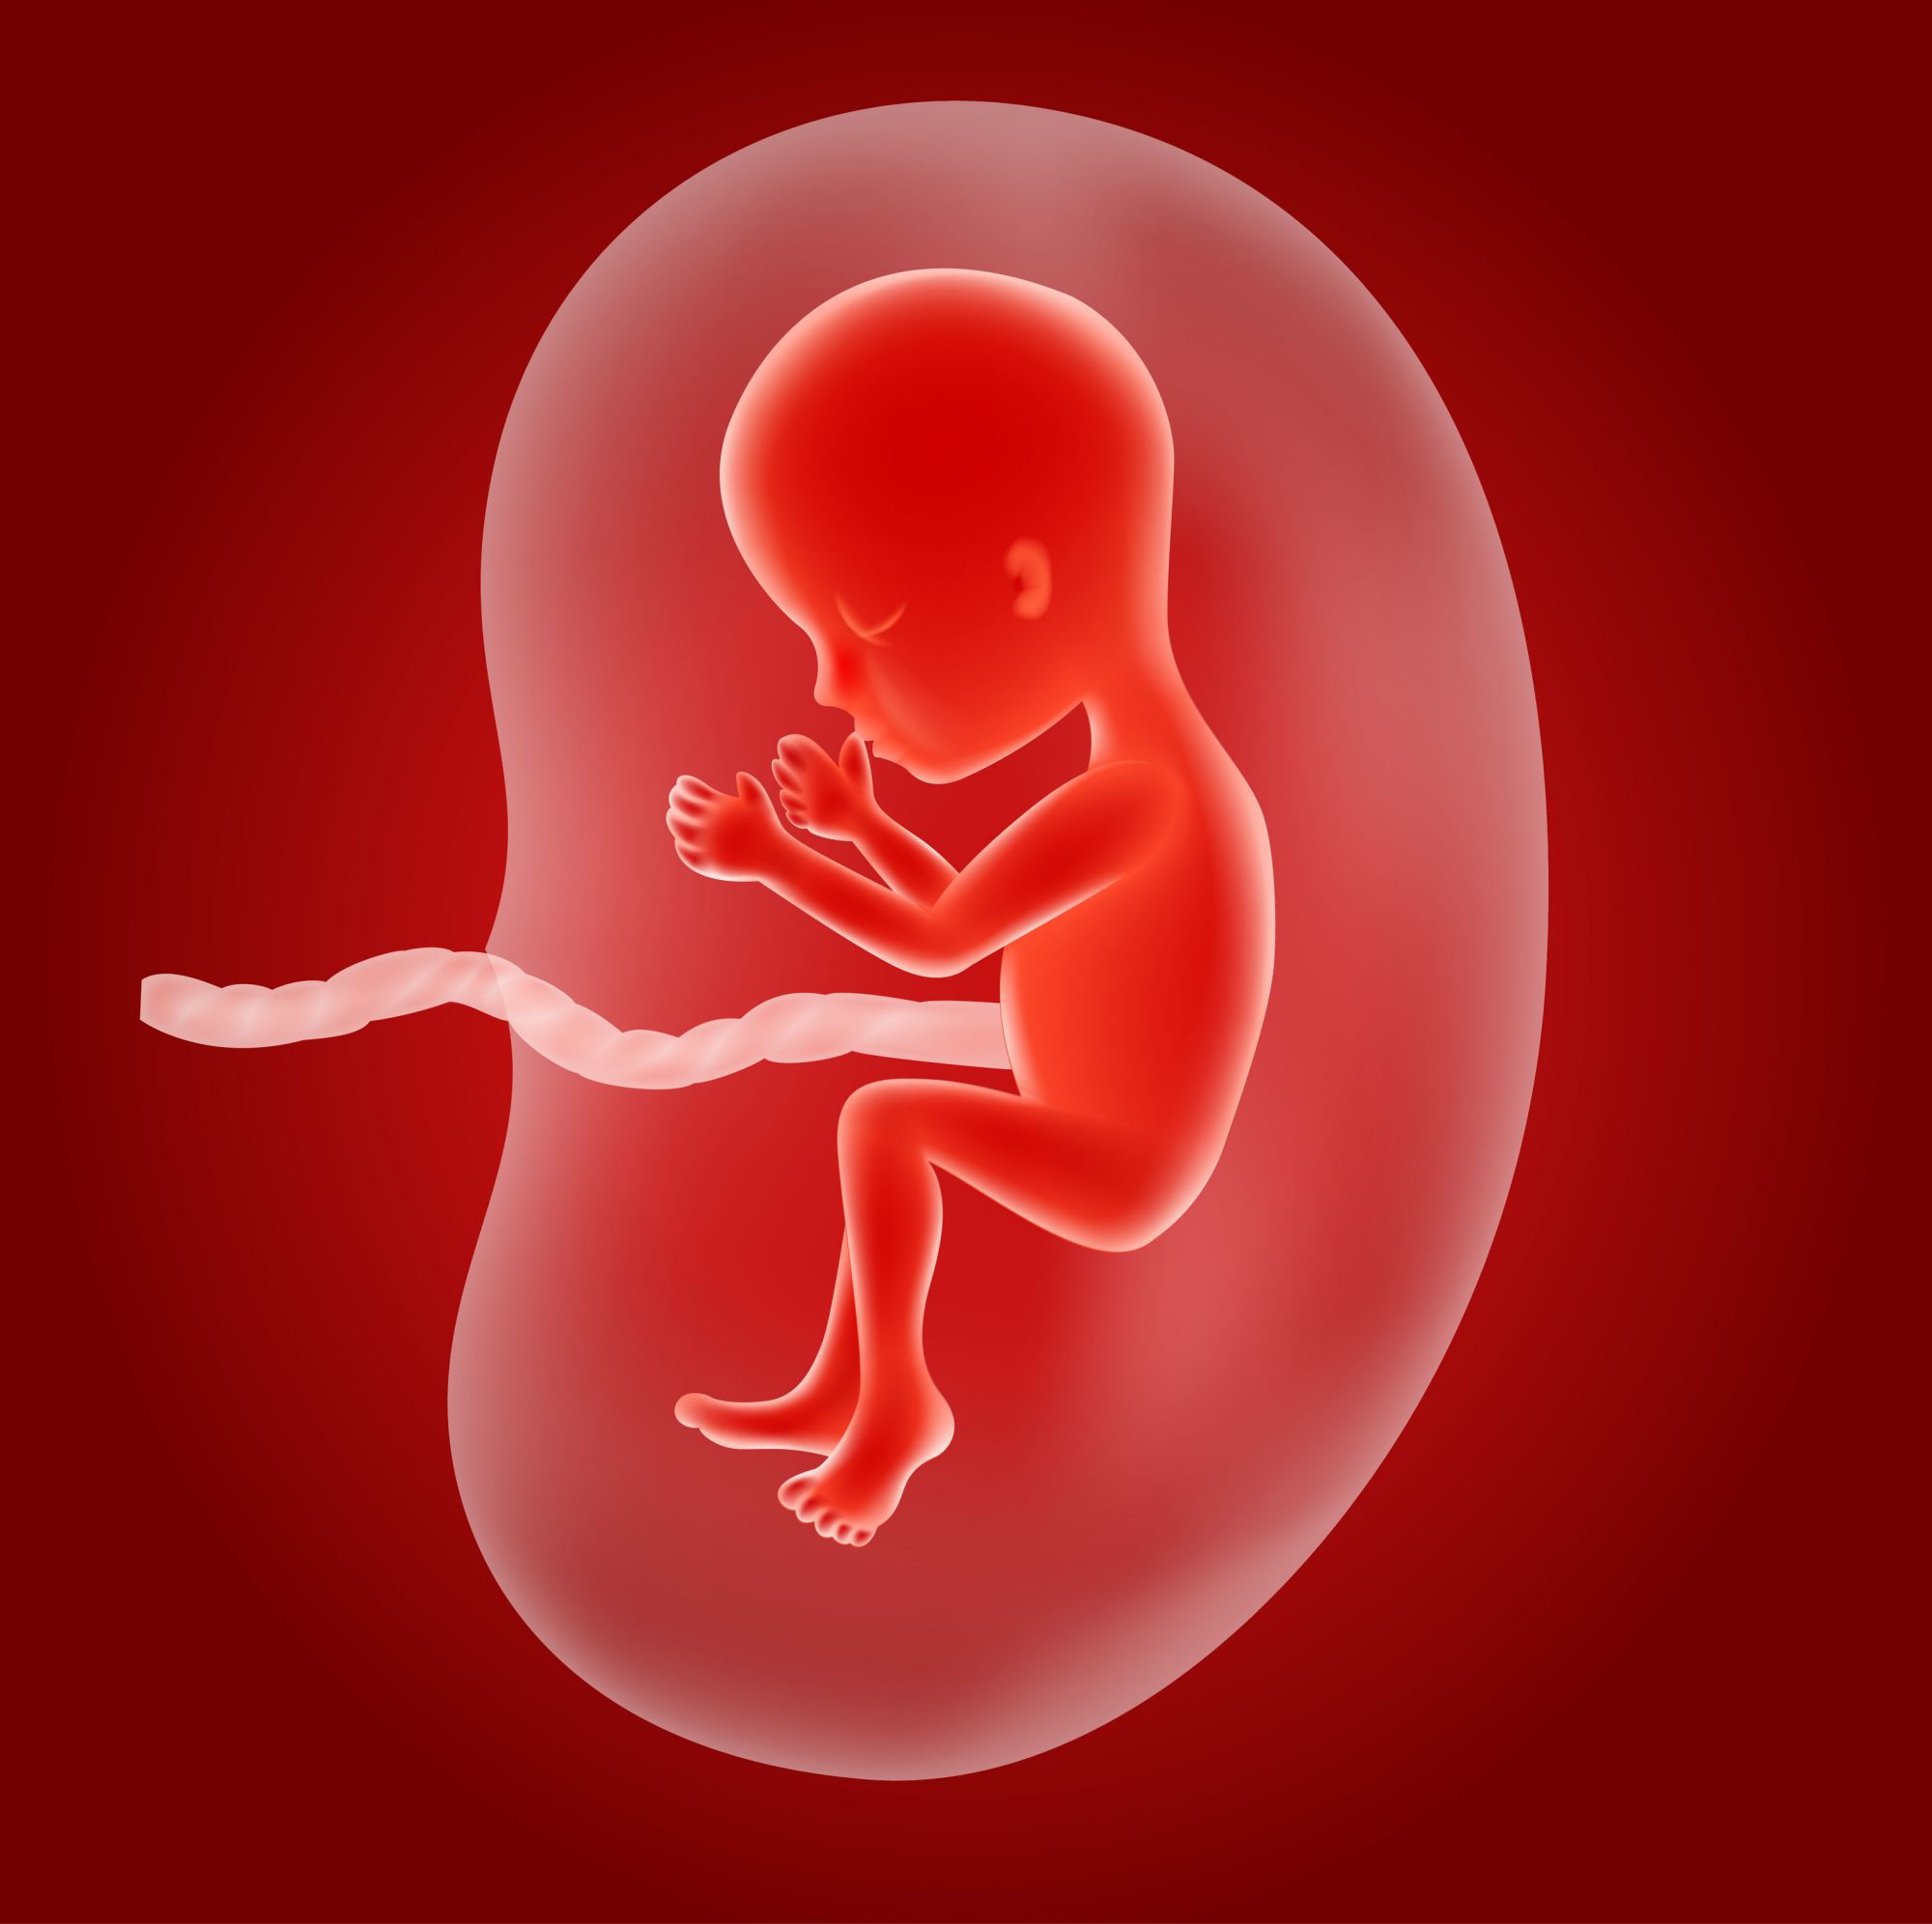 胎儿室管膜图片